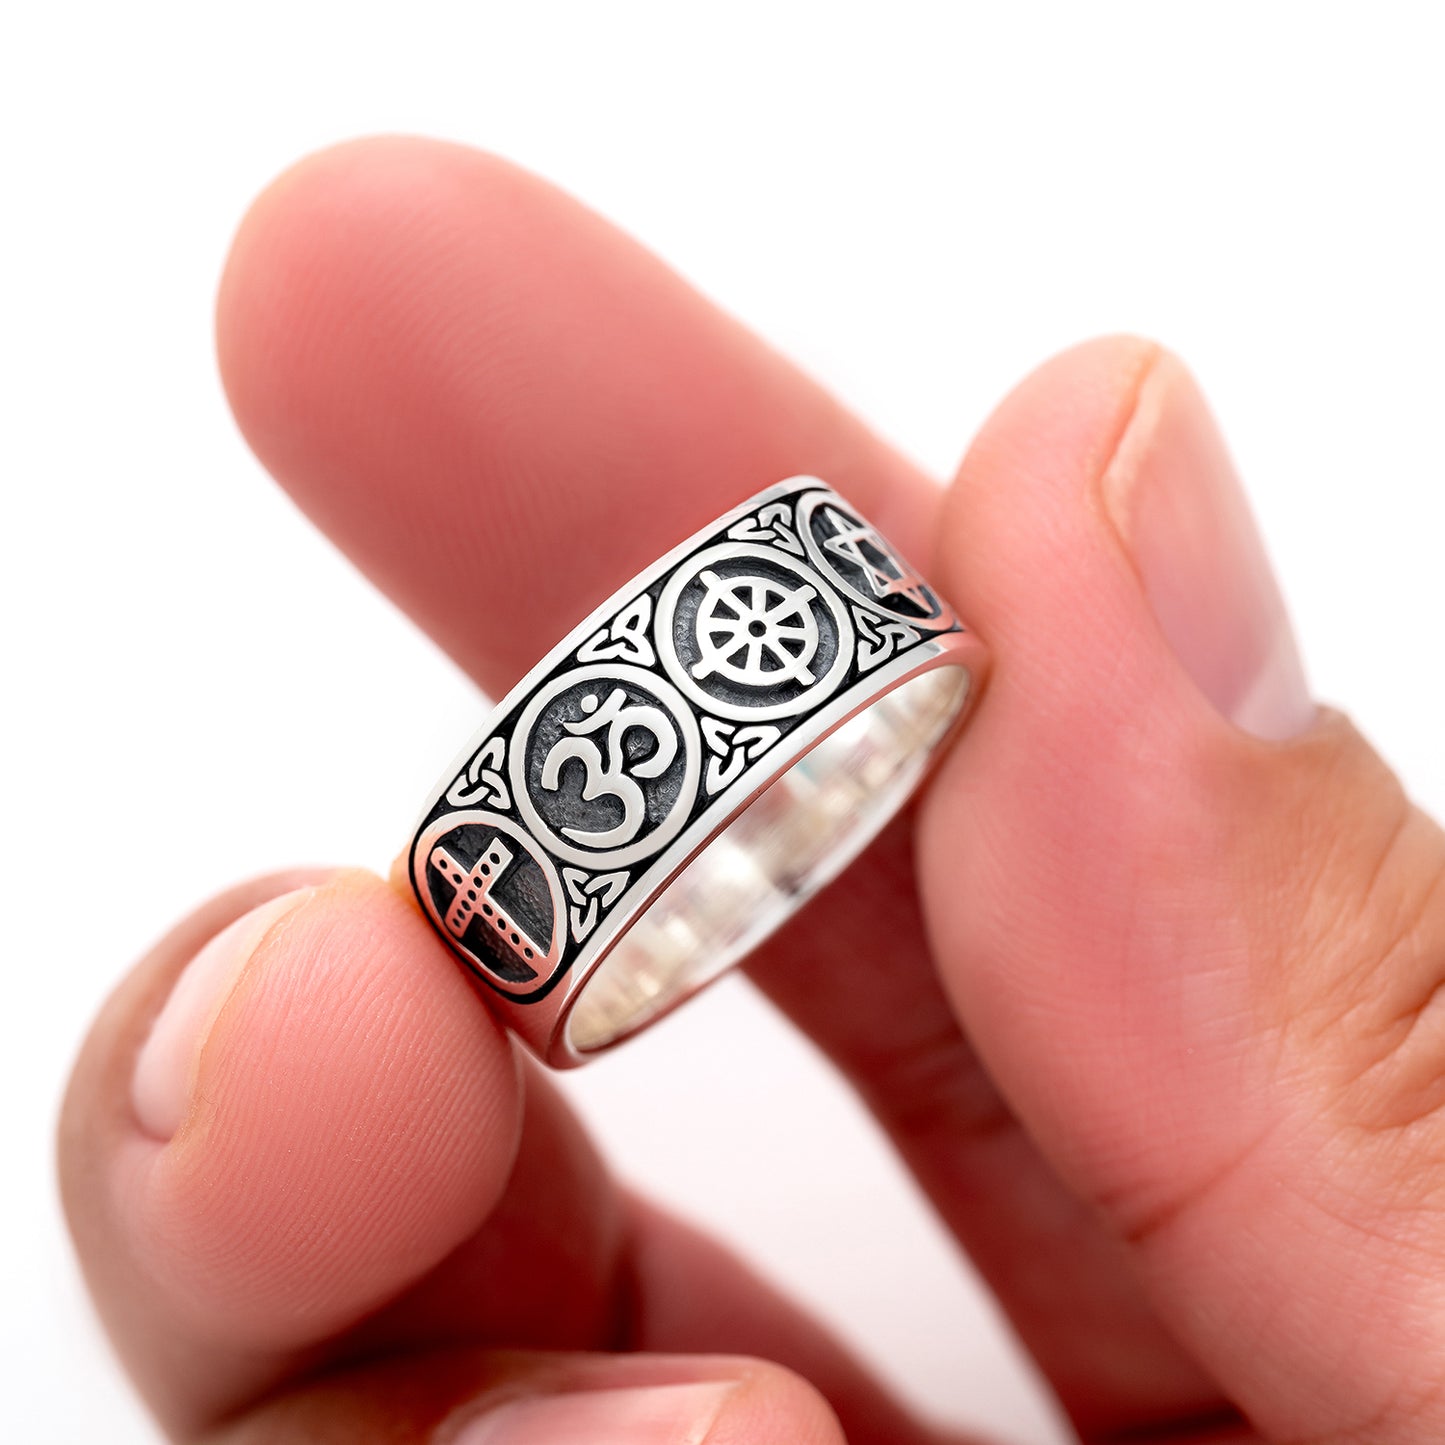 925 Sterling Silver Sacred Symbols Ring